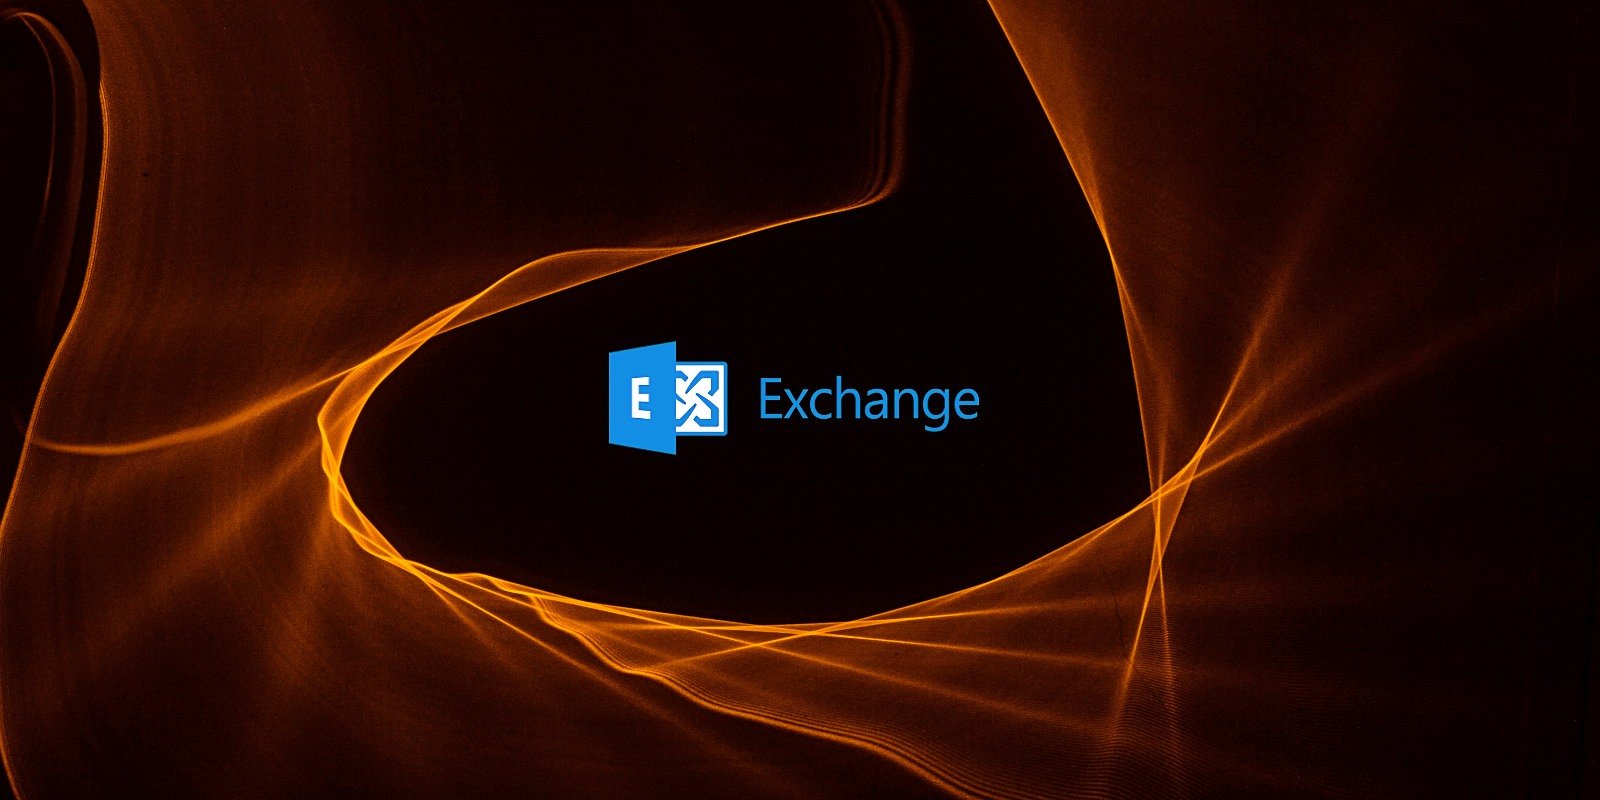 Microsoft Exchange entouré par le feu